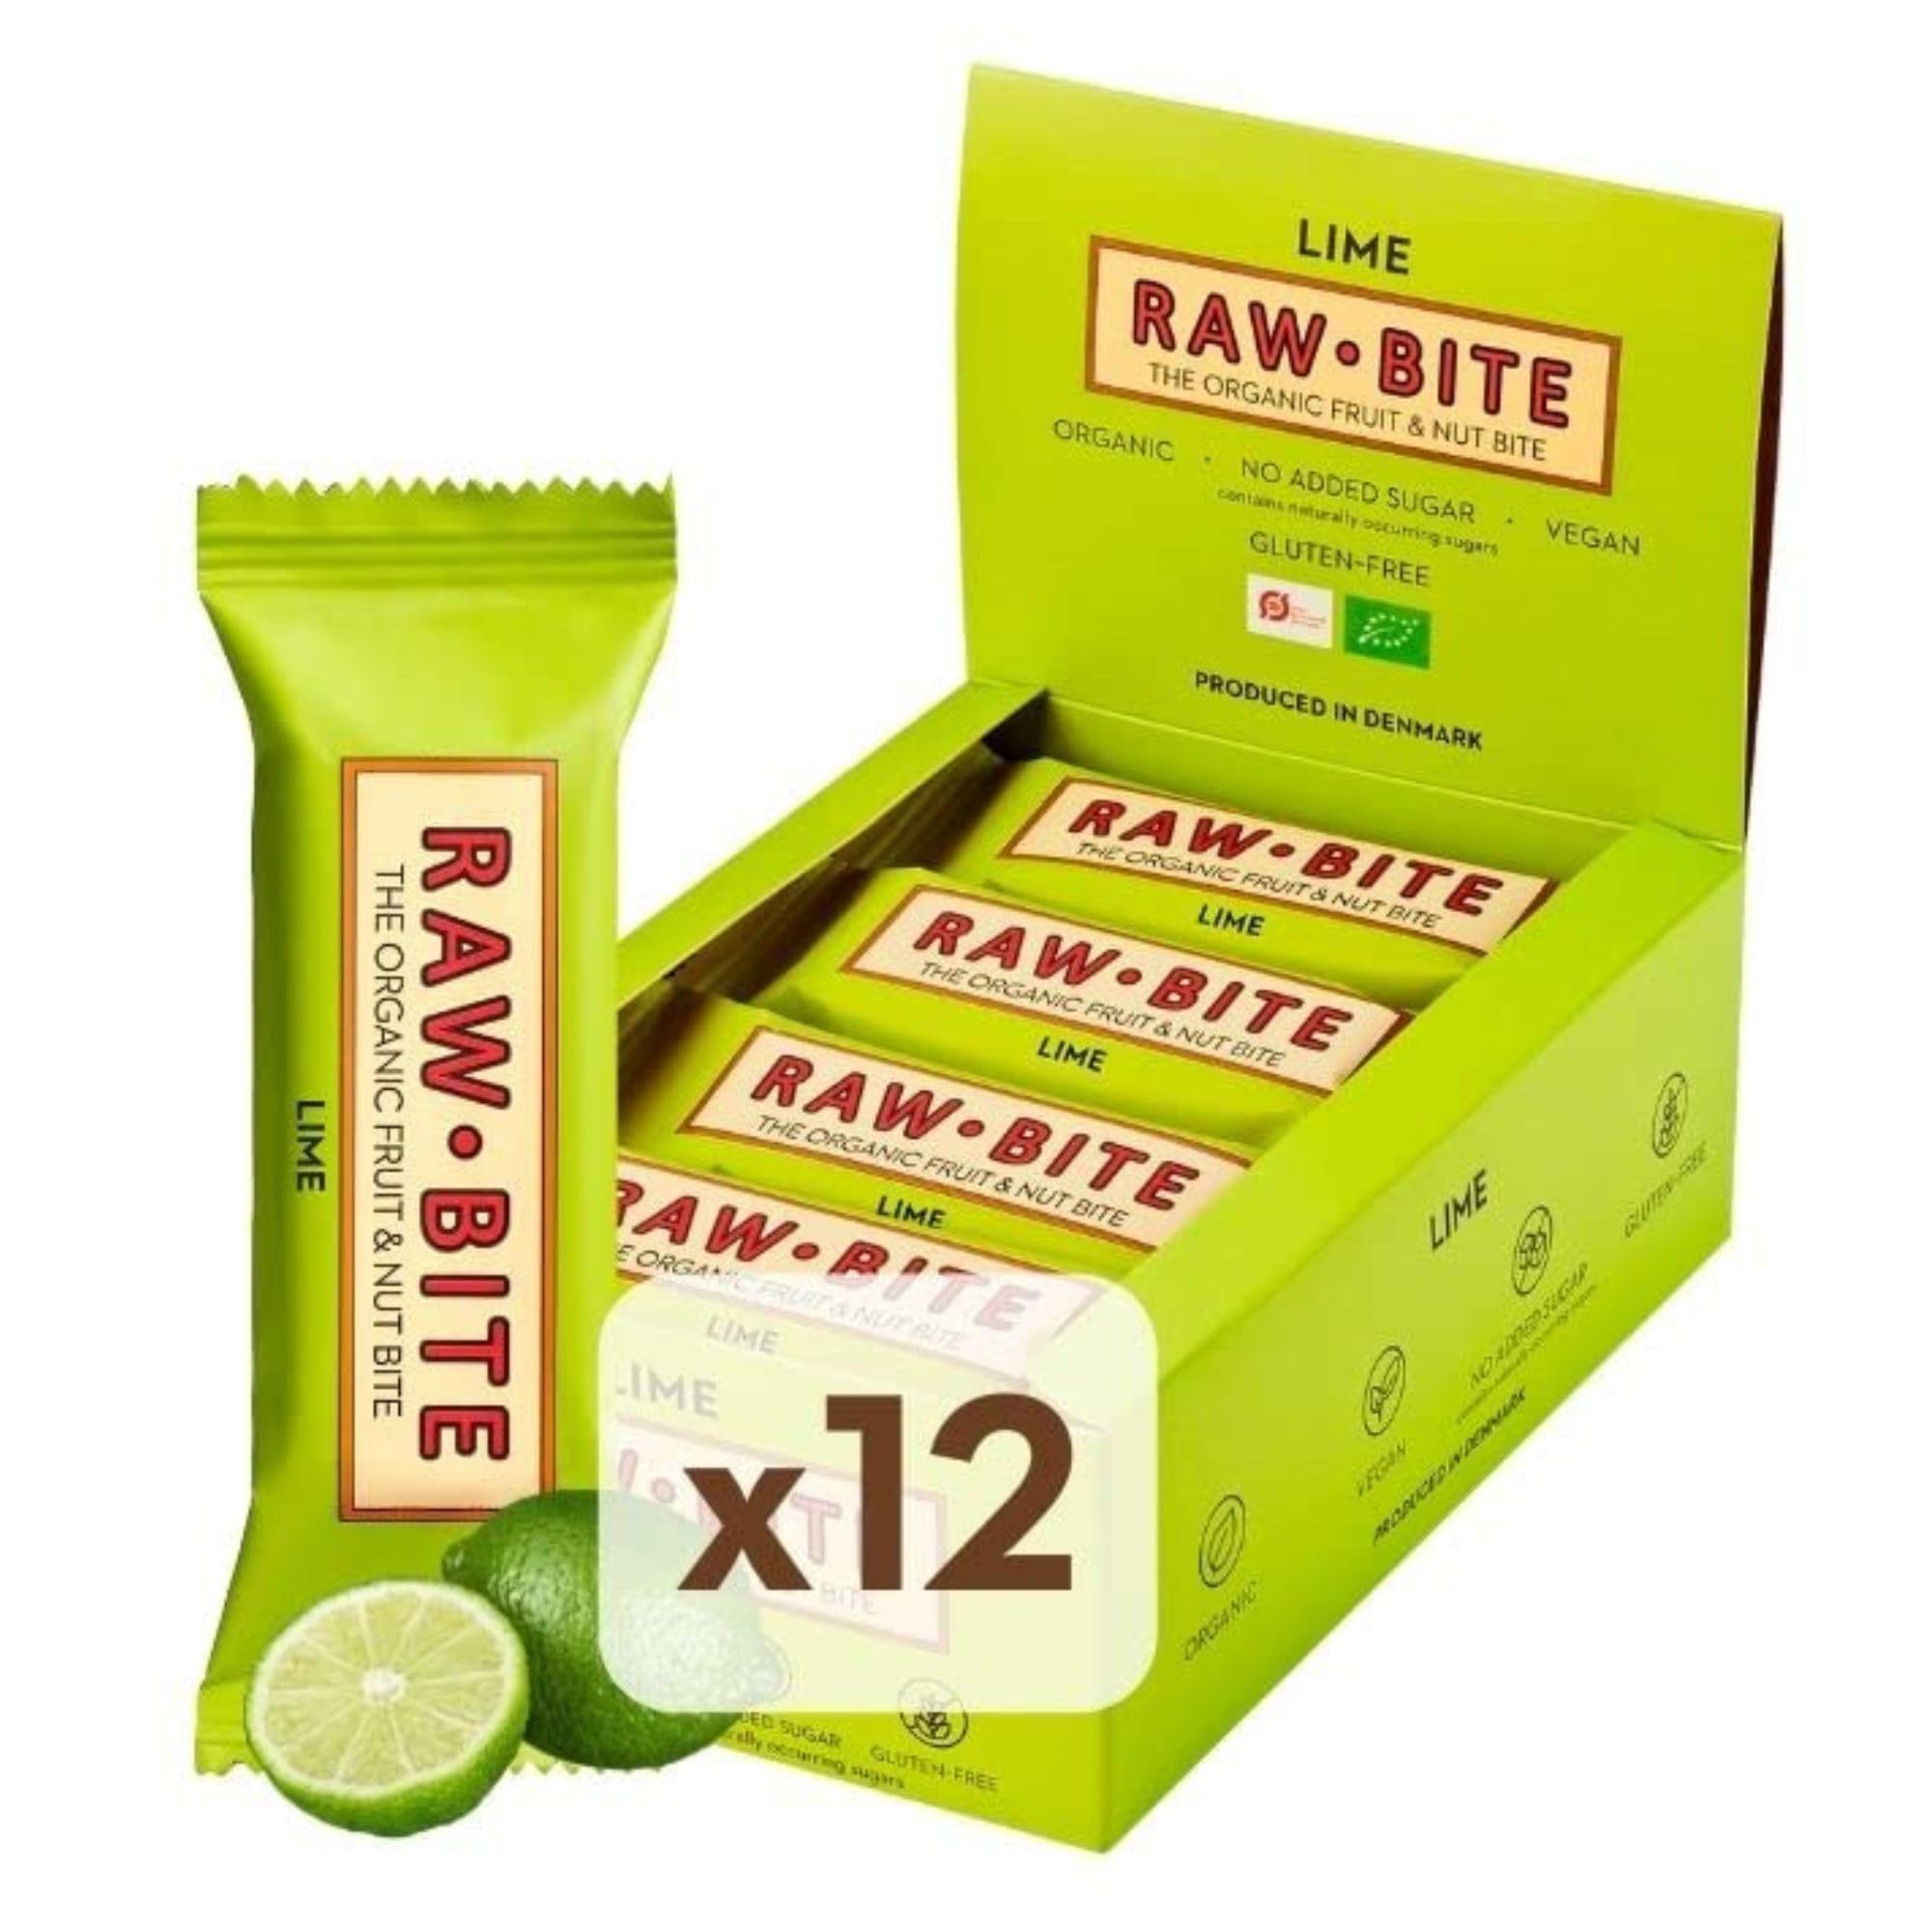 RAWBITE LIME in der 12er Box - Vegan, glutenfrei & ohne Zuckerzusatz - Bio Frucht-Nuss-Riegel mit Limettensaft (12 x 50 g)